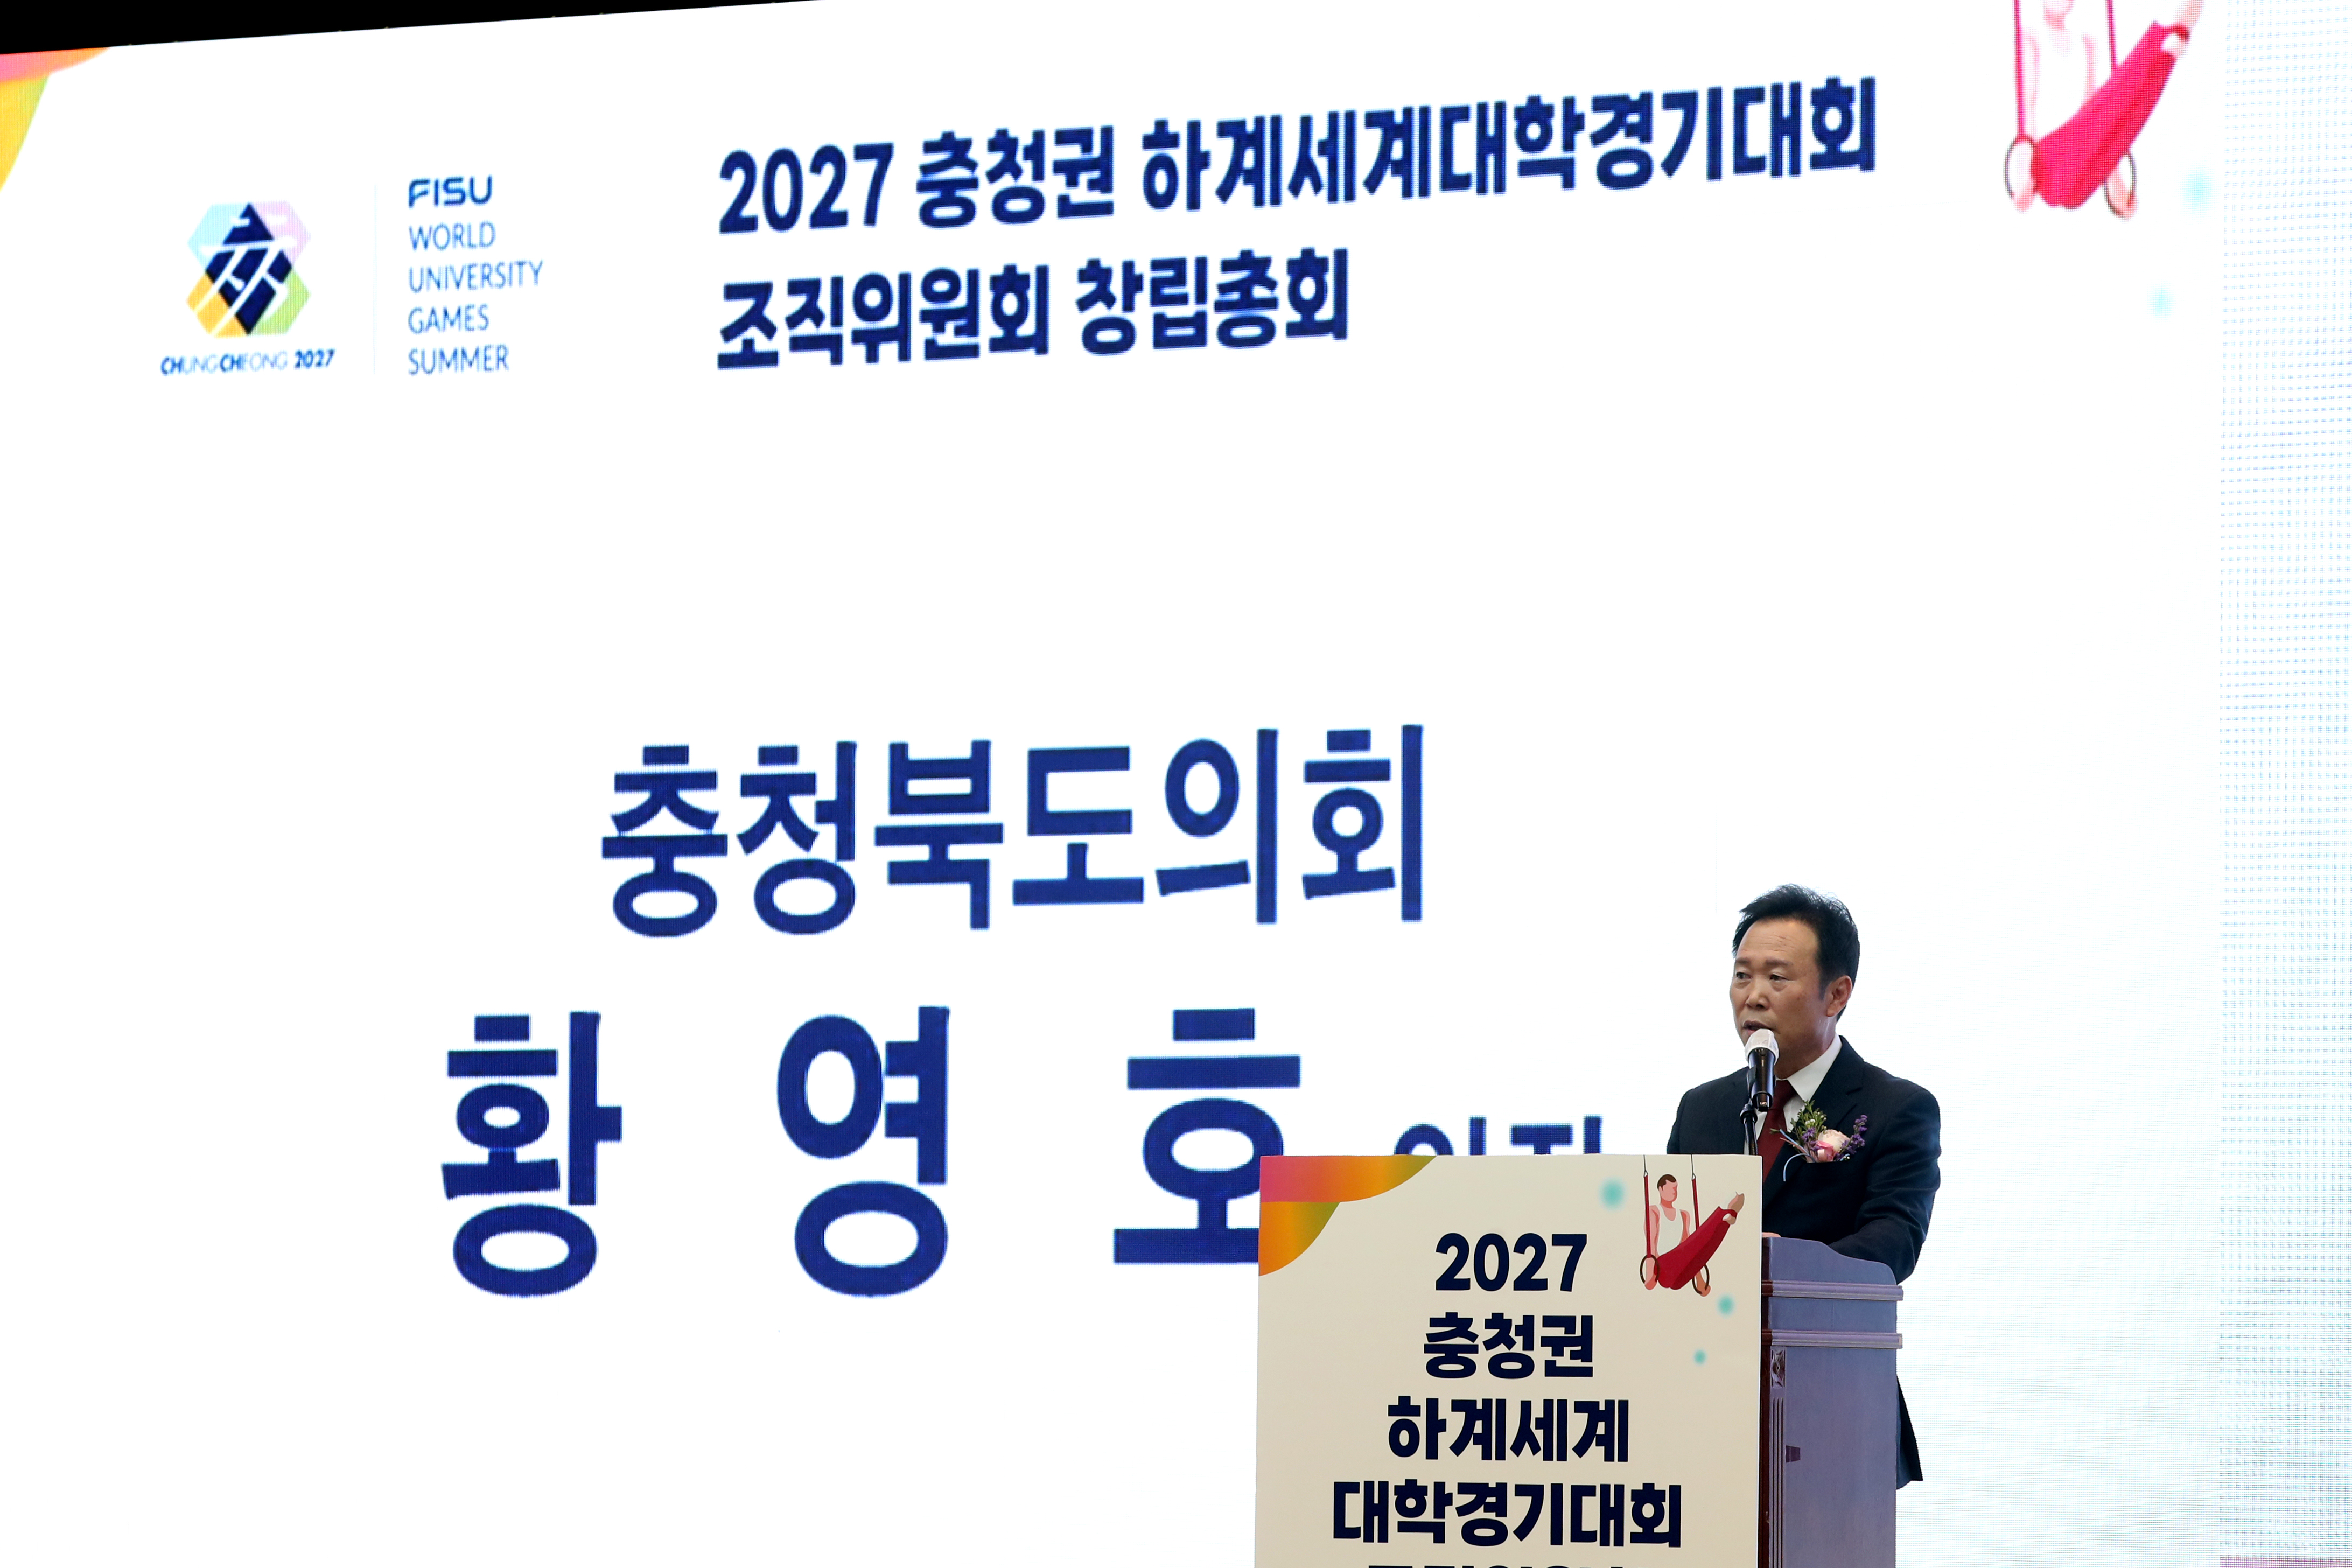 20230324 - 2027 충청권 하계세계대학경기대회 조직위 창립총회(세종컨벤션센터)